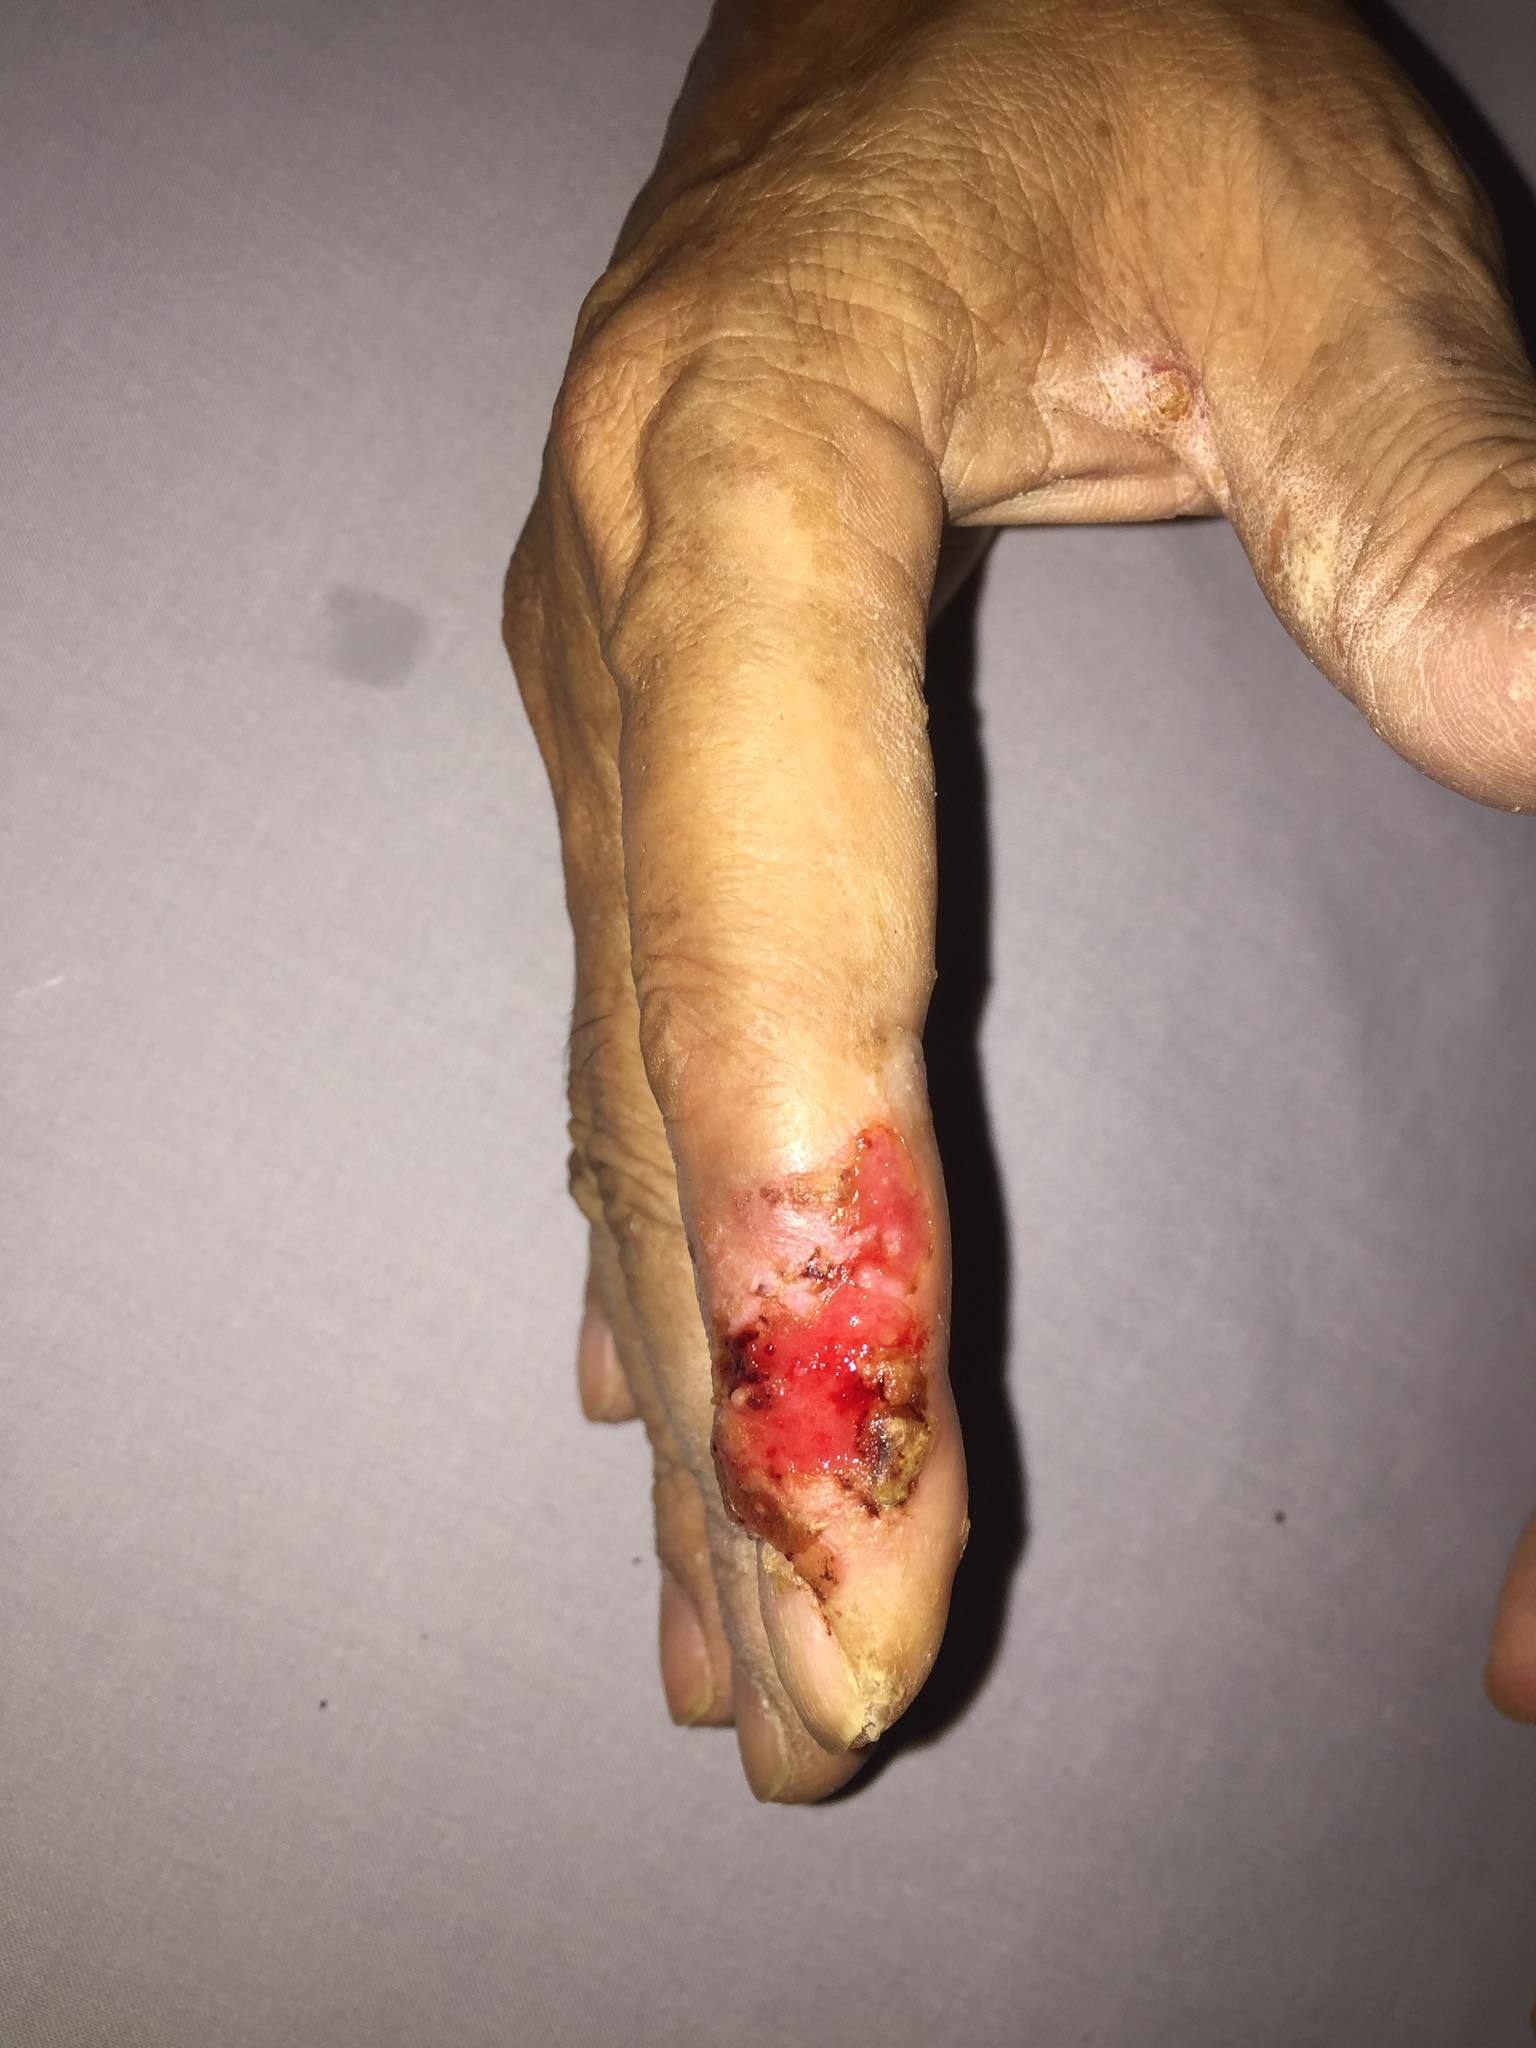 Bàn tay nam bệnh nhân bị ung thư da với những vết loét đỏ, chảy dịch